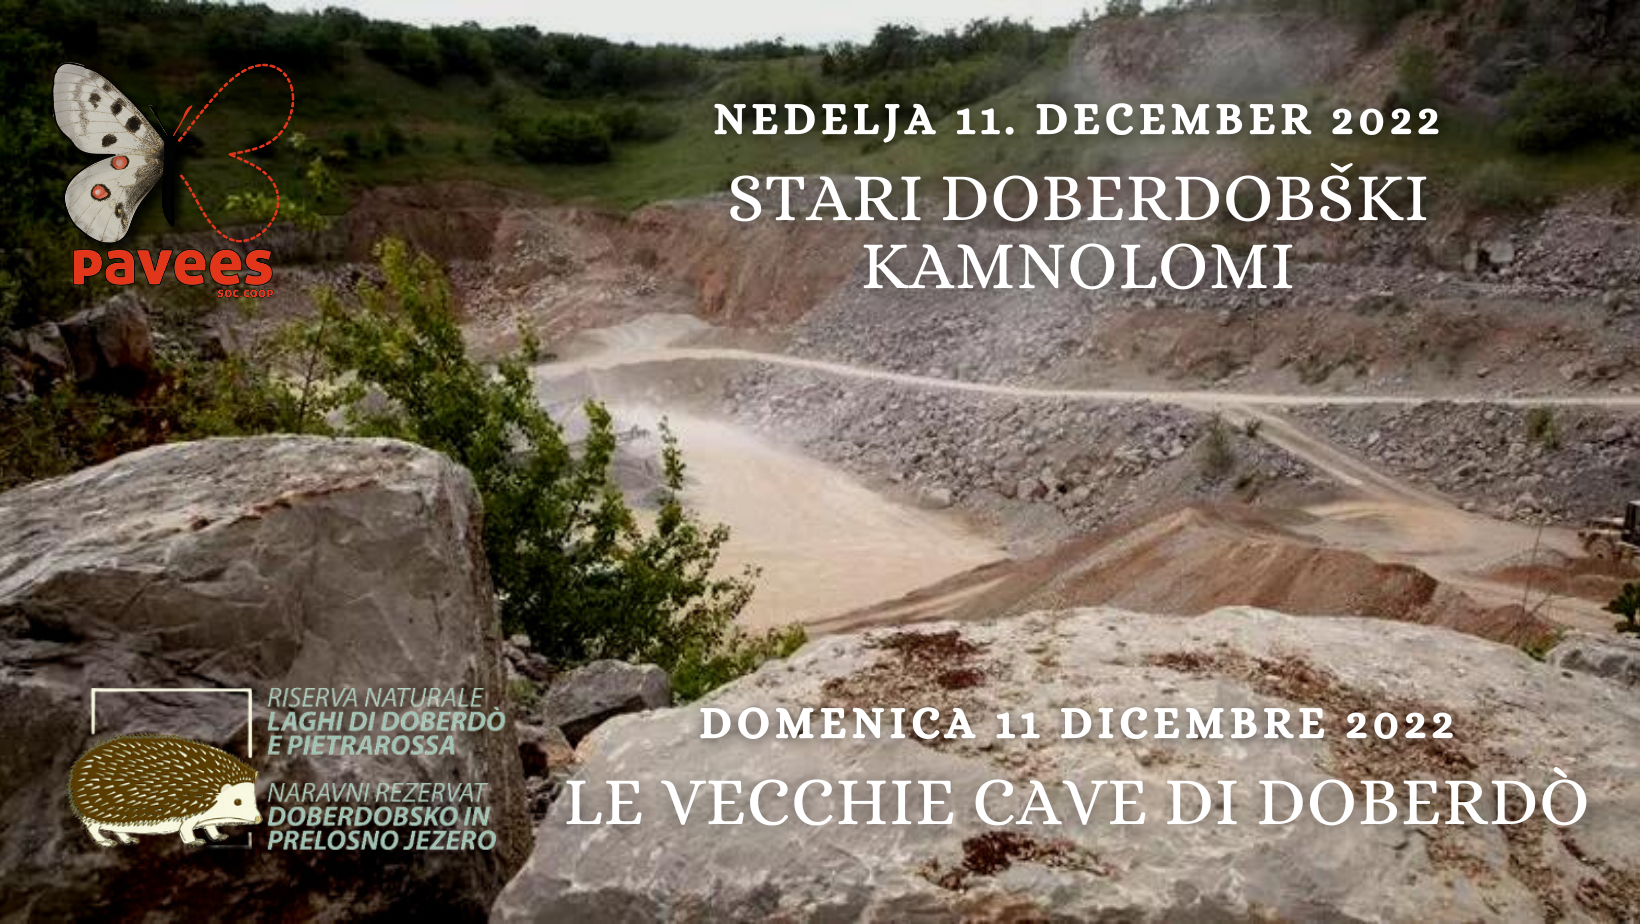 Domenica 11 Dicembre - Le vecchie cave di Doberdò